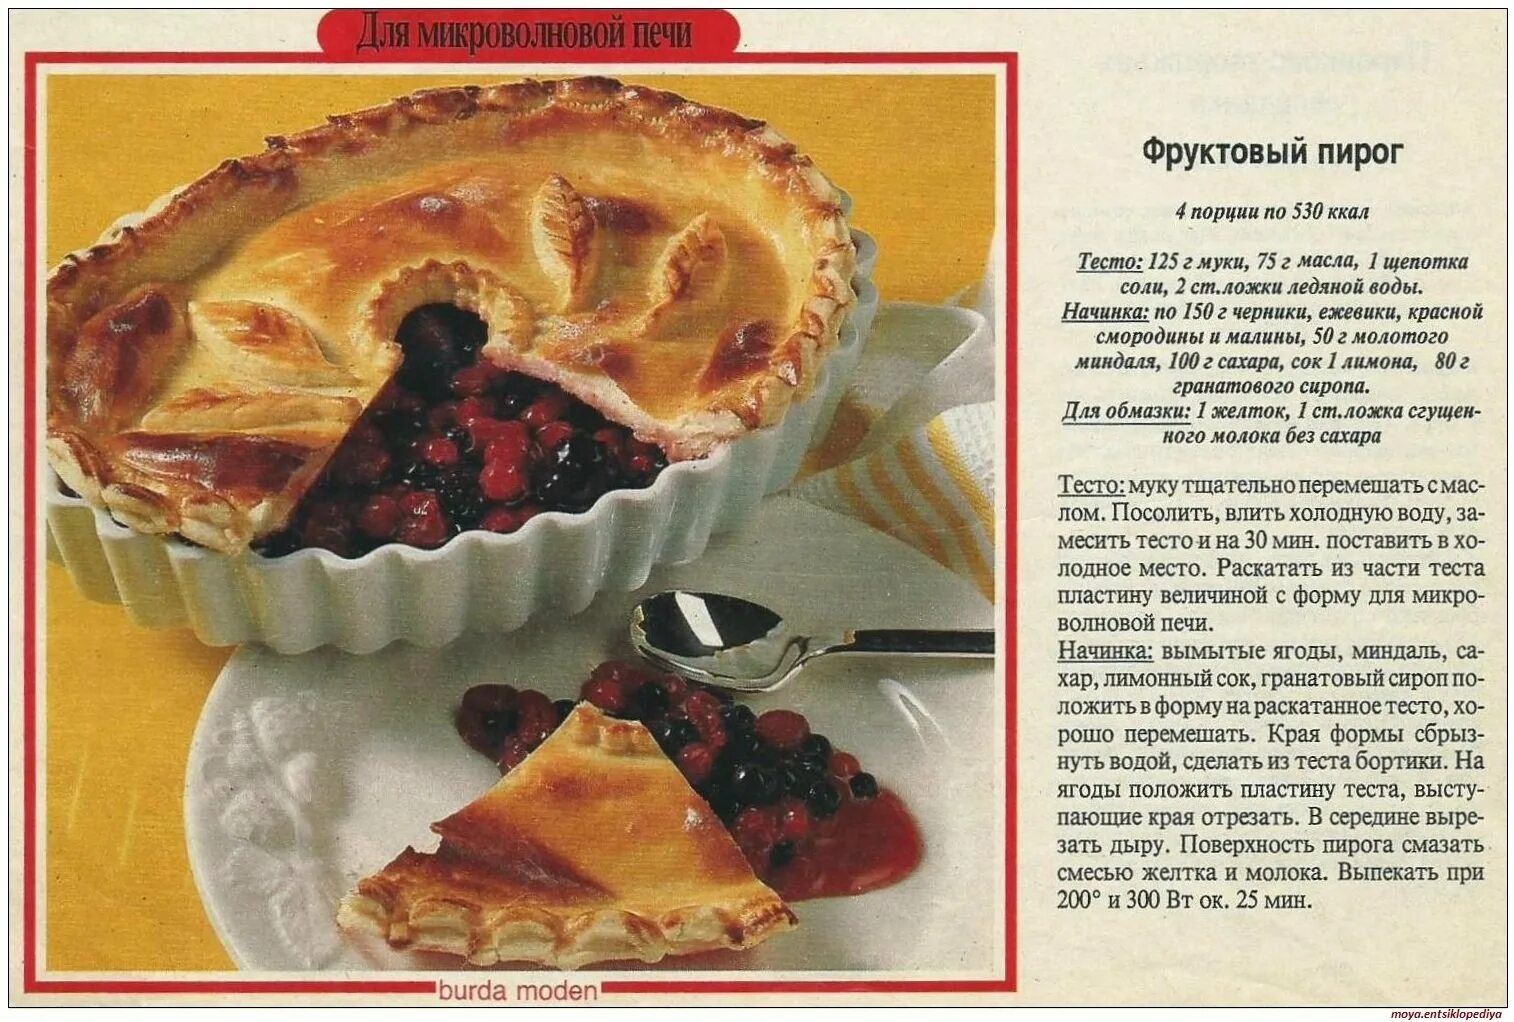 Тесты для пирога вкусные. Рецепты выпечки в картинках. Рецепт пирога в картинках. Картинки рецепты пироги. Пироги домашние с картинками и рецептами.